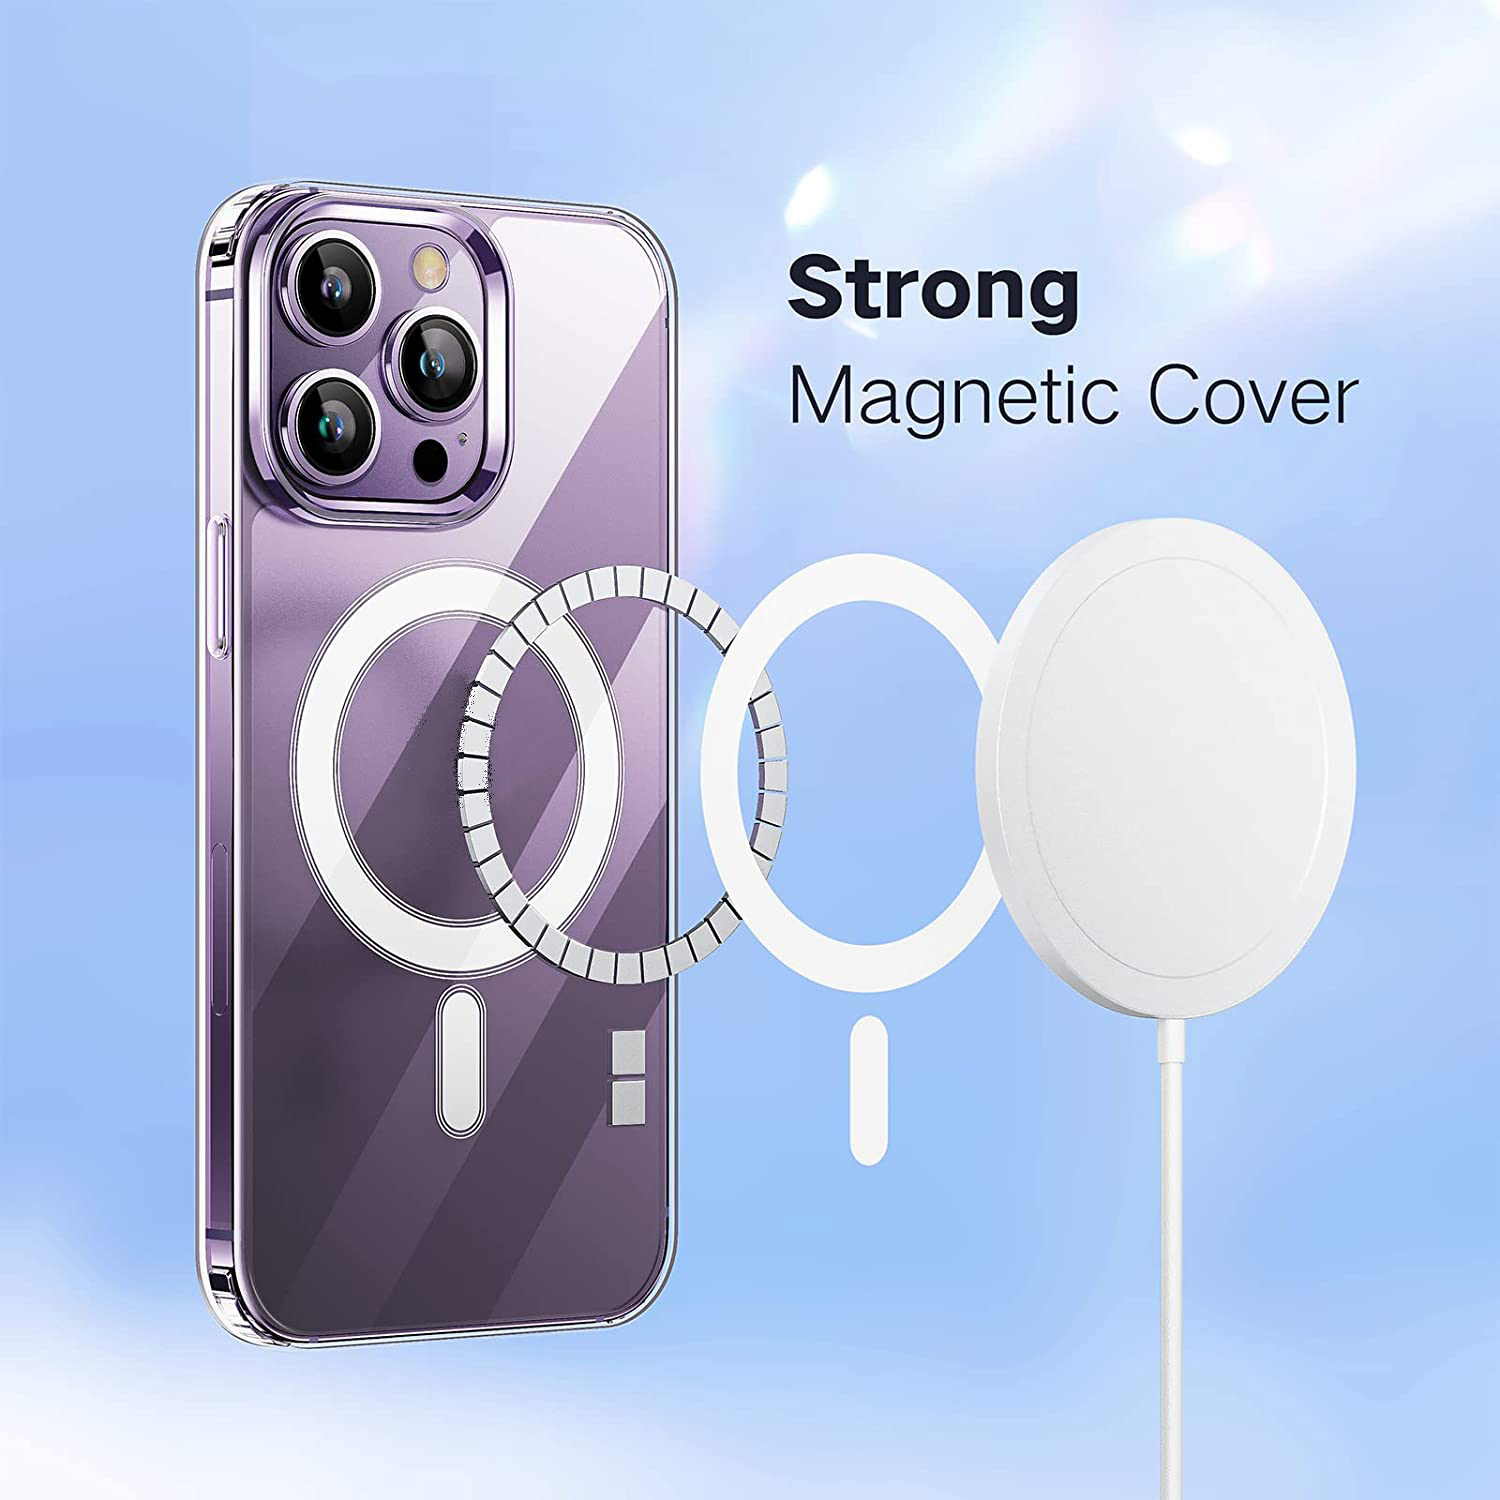 Ốp lưng chống sốc trong suốt hỗ trợ sạc Maqsafe cho iPhone 14 Pro (6.1 inch) hiệu Memumi Maqsafe Magetic Case siêu mỏng 1.5mm, độ trong tuyệt đối, chống trầy xước, chống ố vàng, tản nhiệt tốt - Hàng nhập khẩu